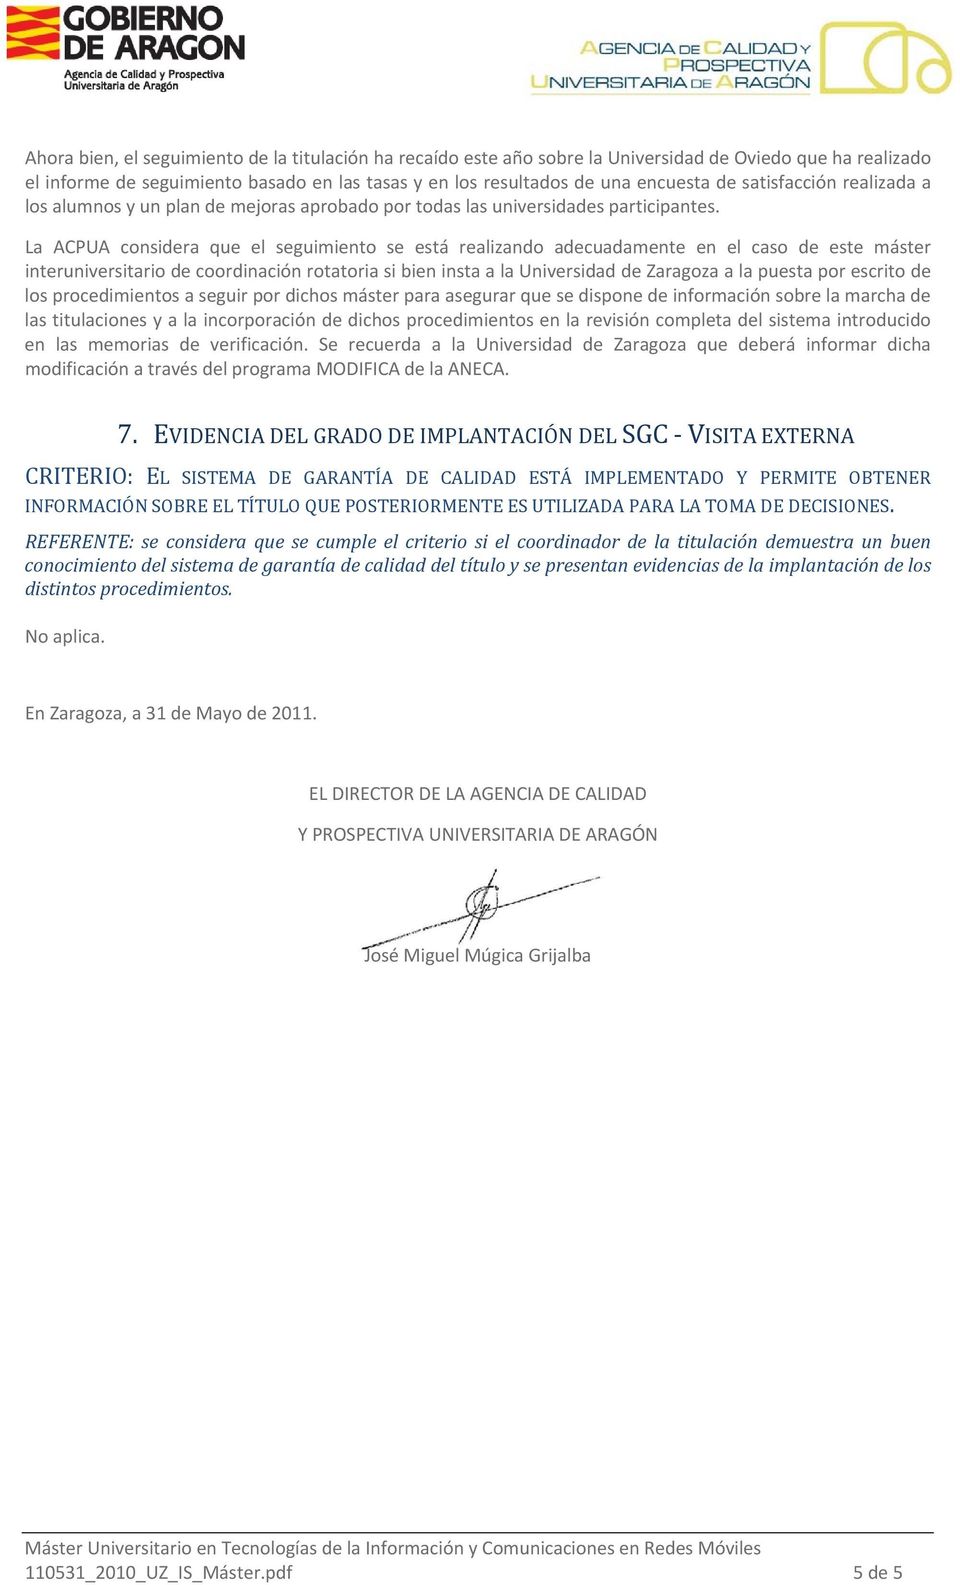 La ACPUA considera que el seguimiento se está realizando adecuadamente en el caso de este máster interuniversitario de coordinación rotatoria si bien insta a la Universidad de Zaragoza a la puesta